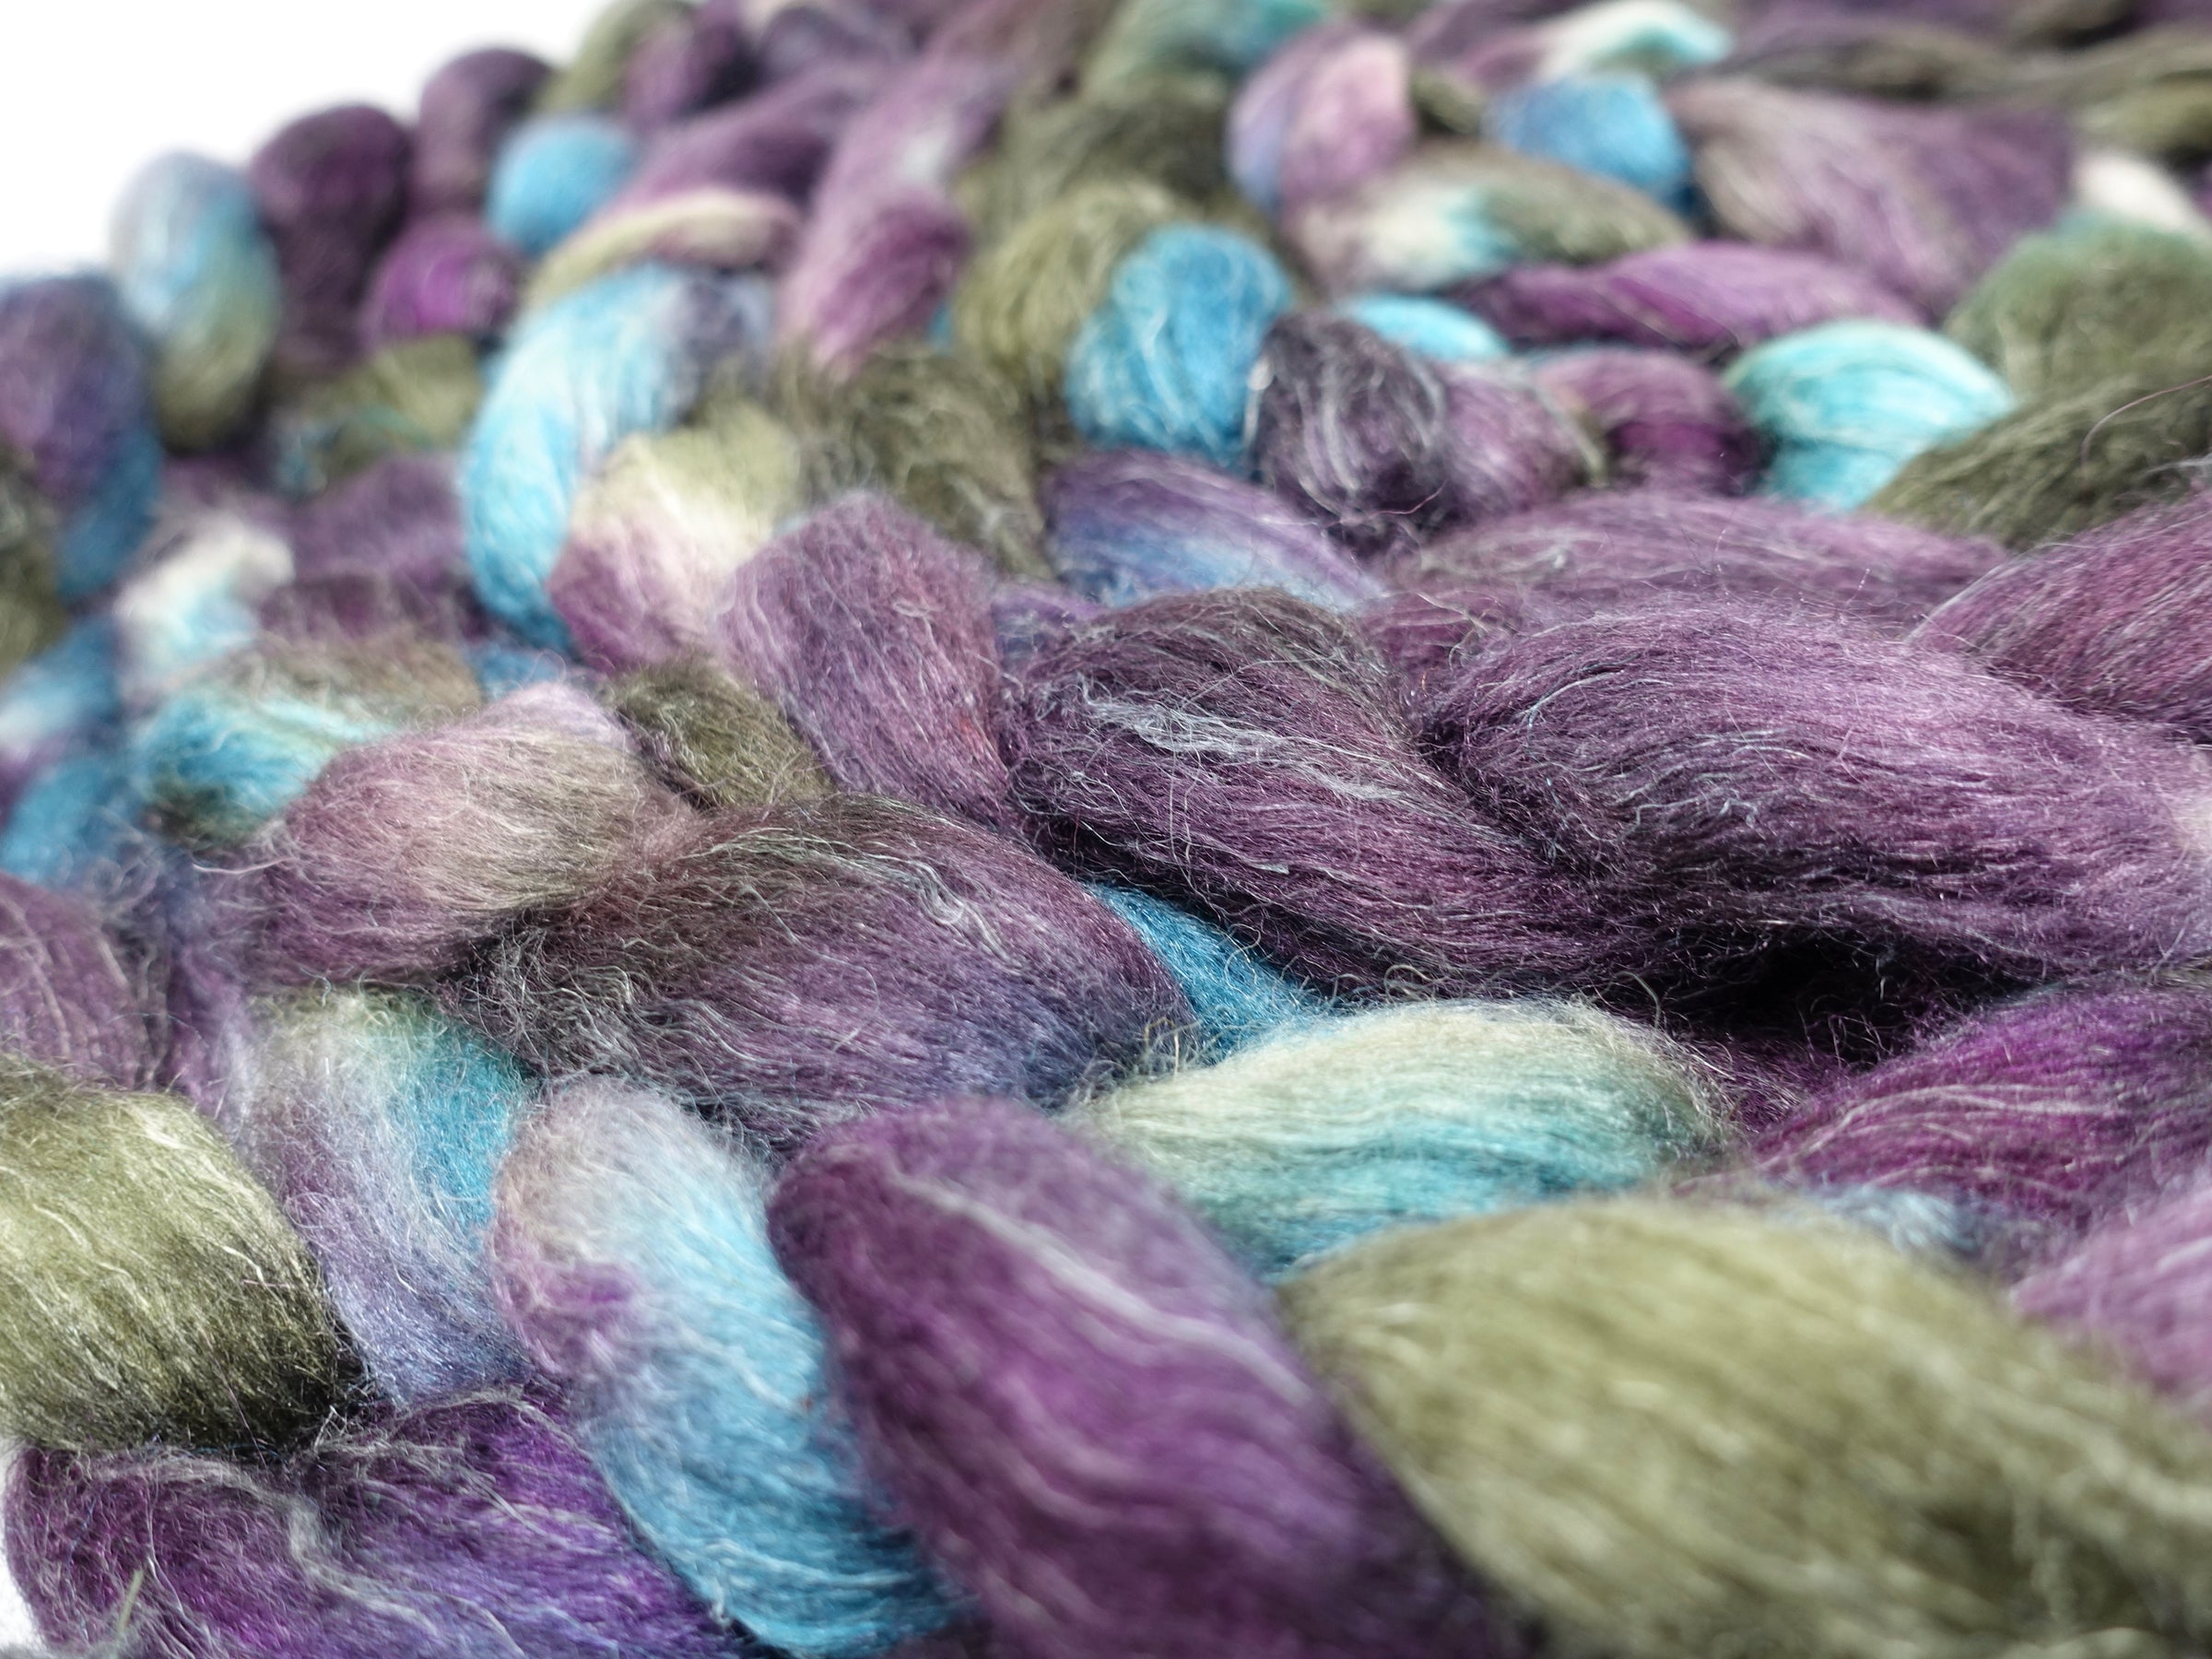 Romney, Silk & Linen. Hand Dyed Variegated - 100g. British Wool